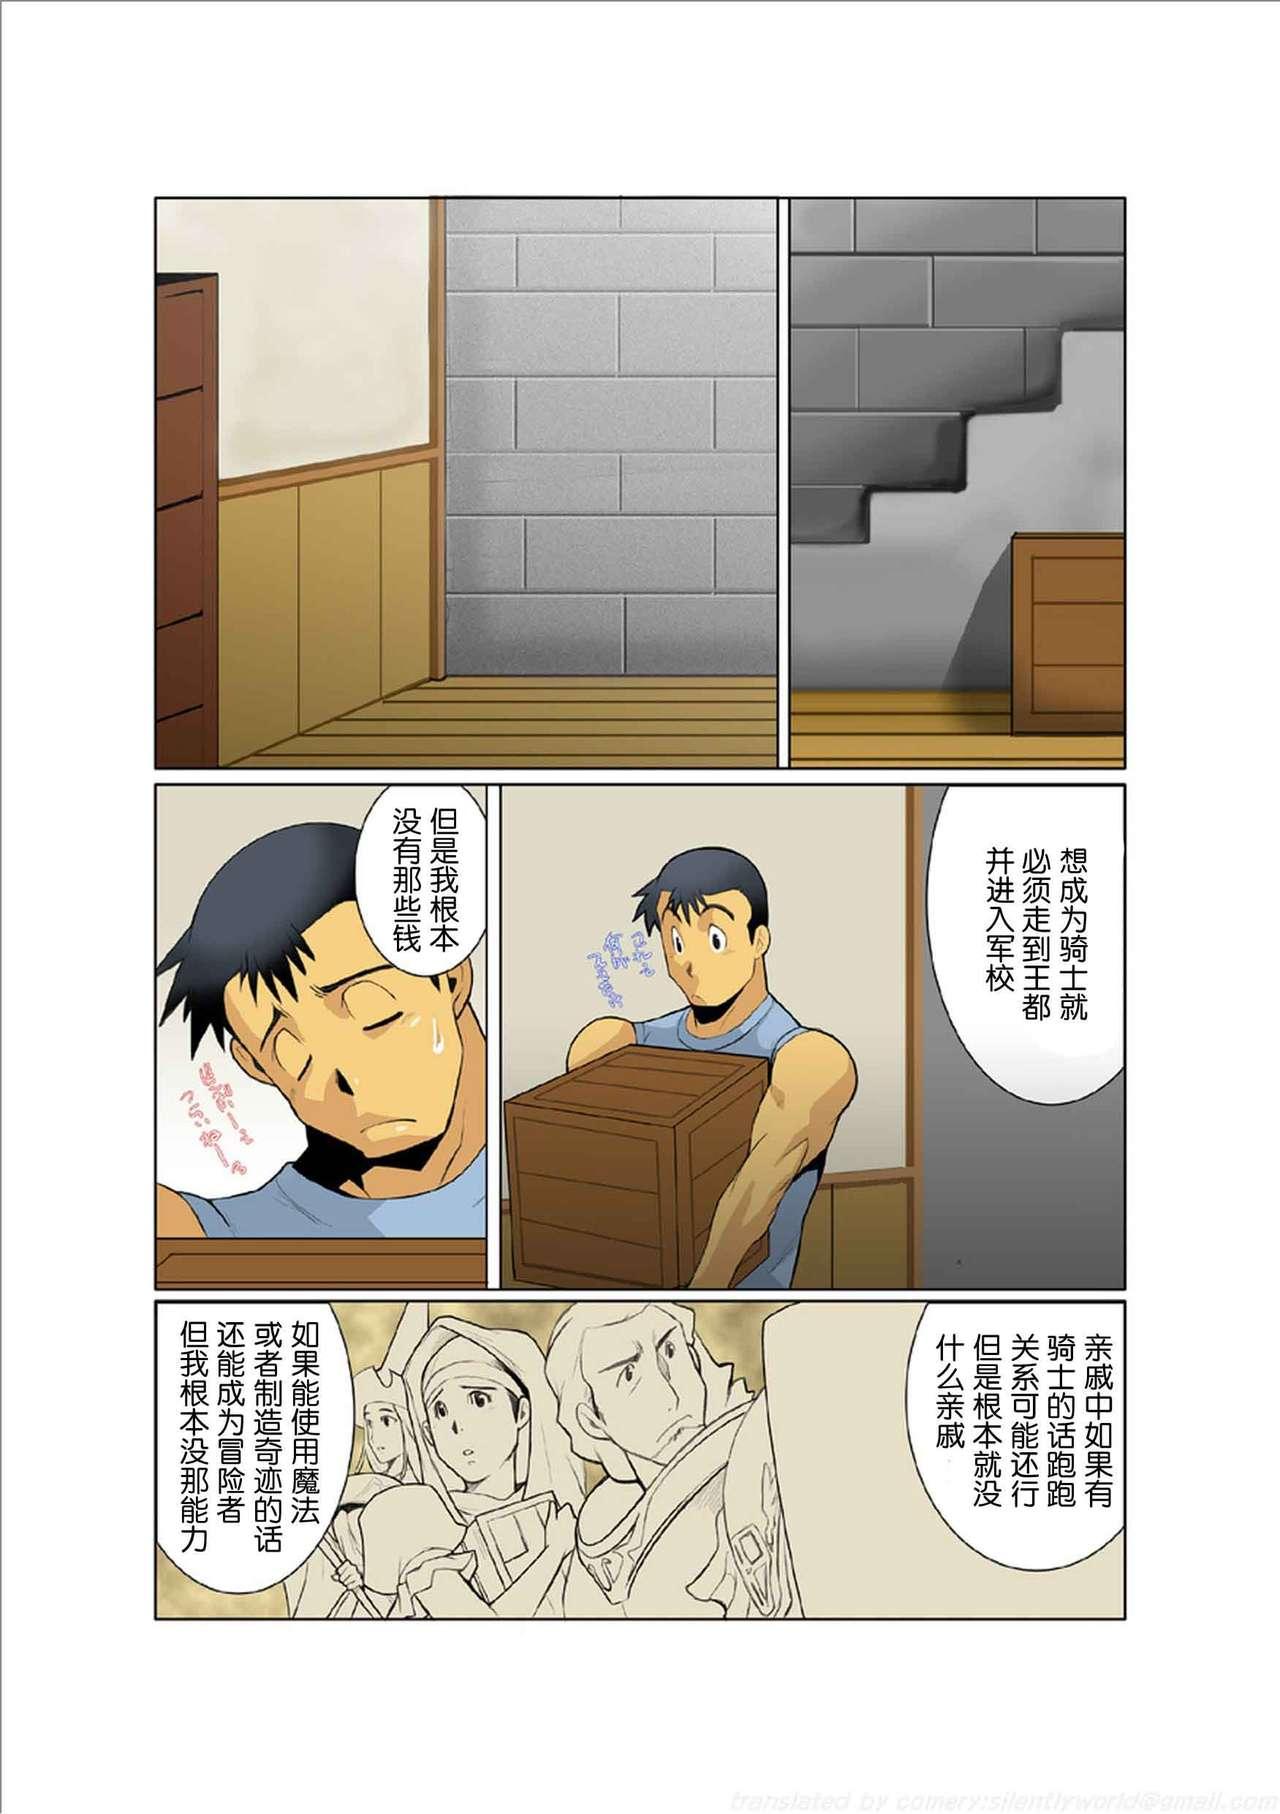 Gang Bang Dorn Story - Original Banho - Page 7